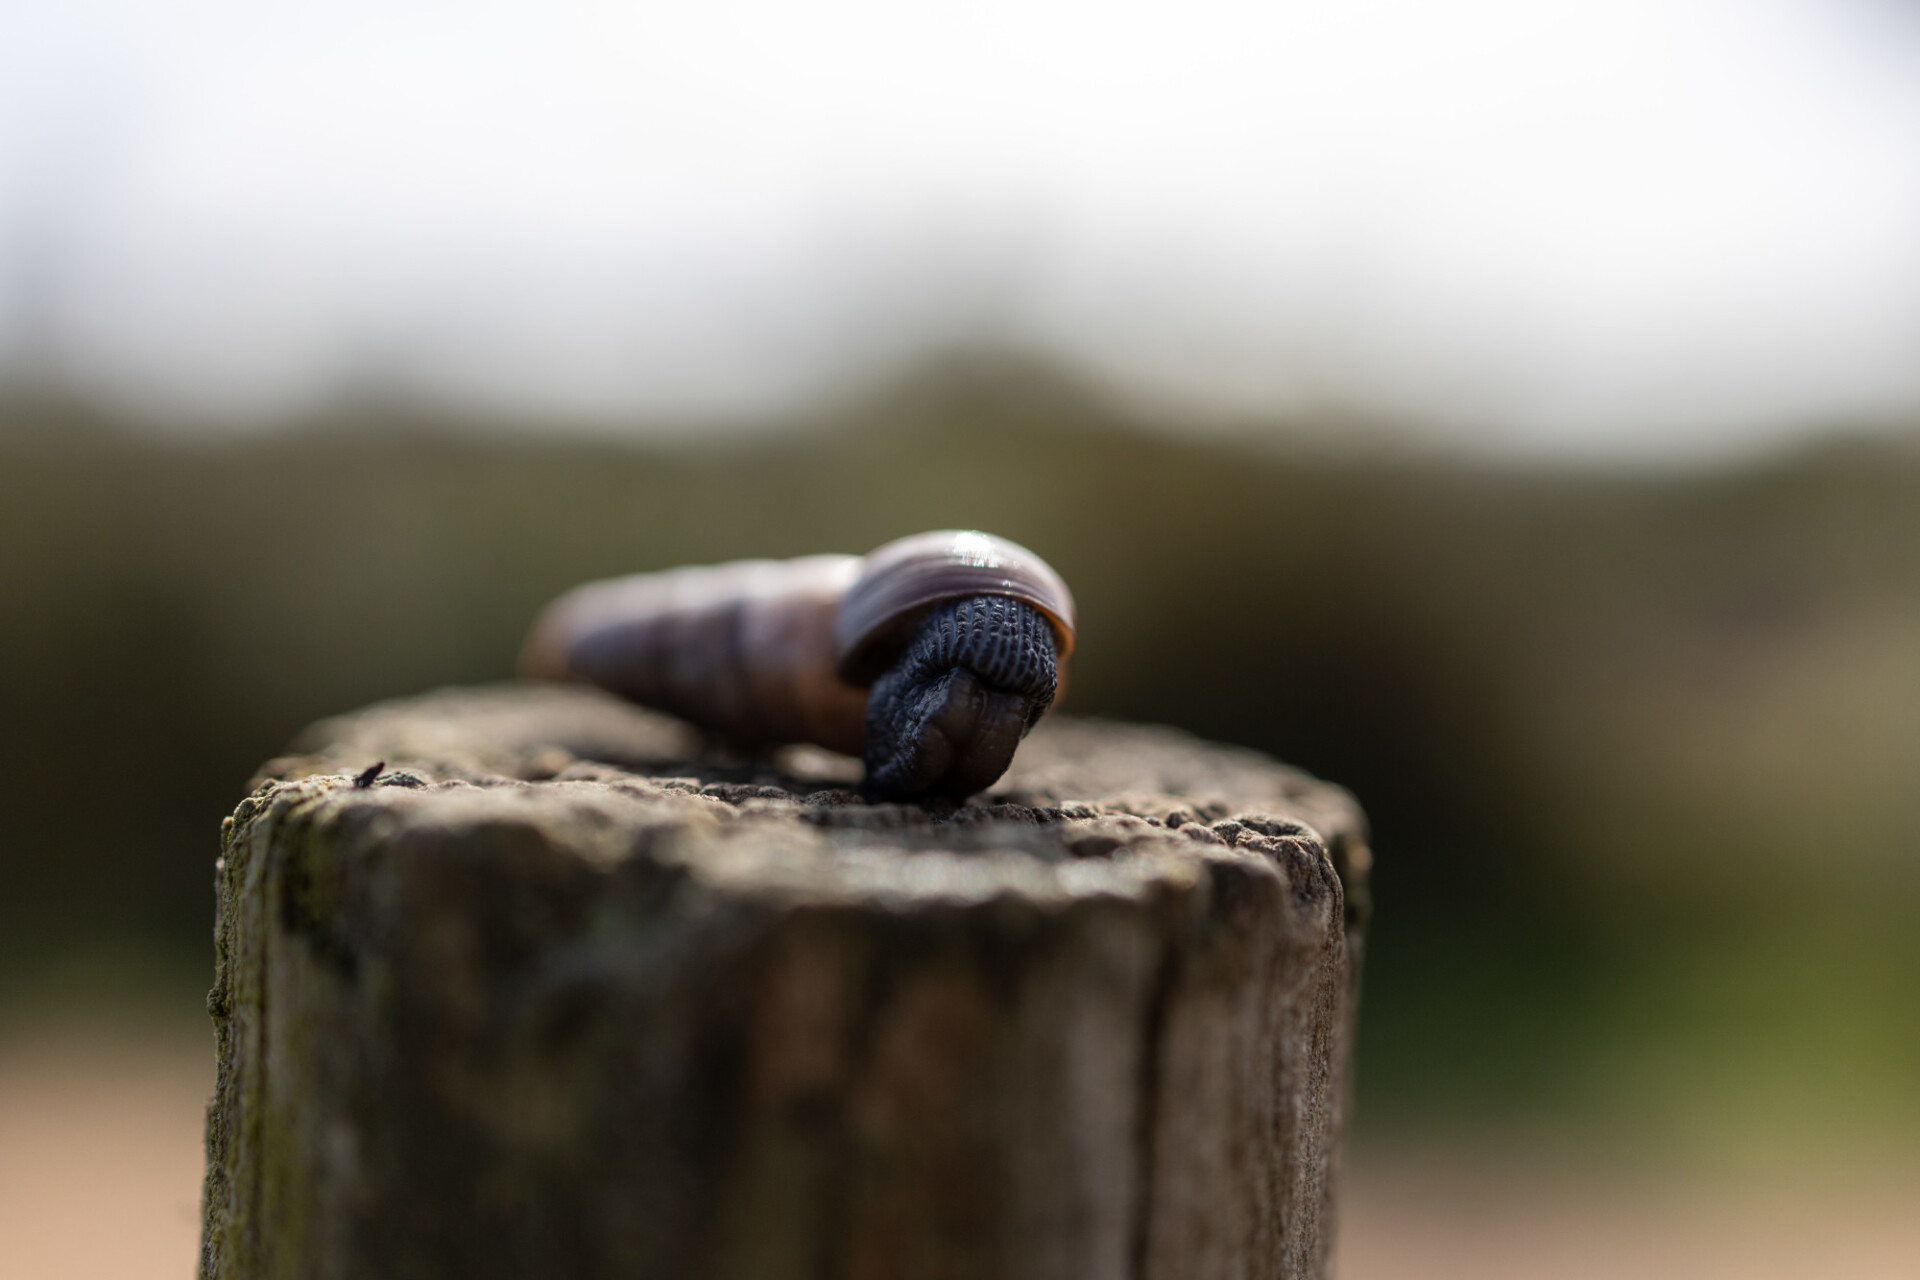 Clausiliidae, the door snails